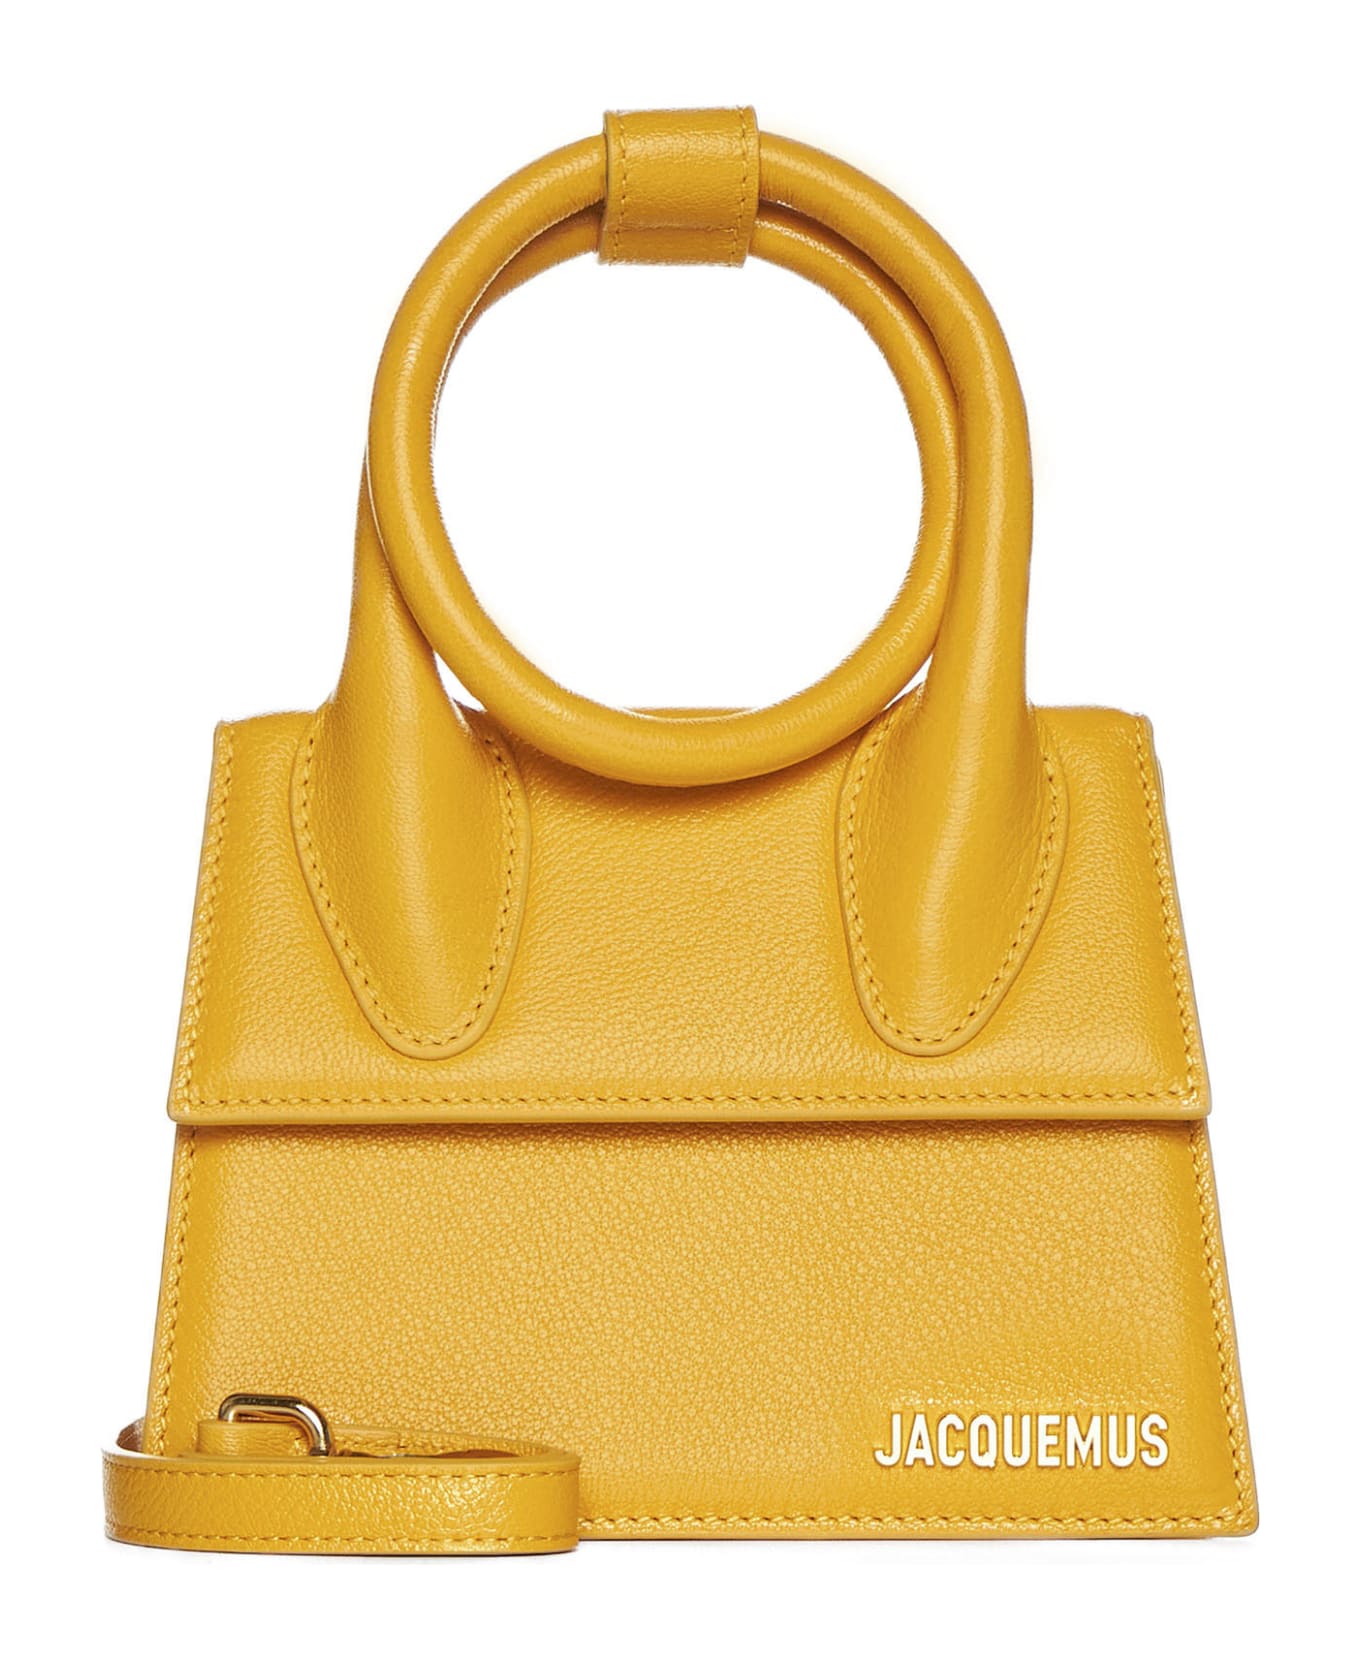 Jacquemus Le Chiquito Noeud Coiled Handbag - Dark orange